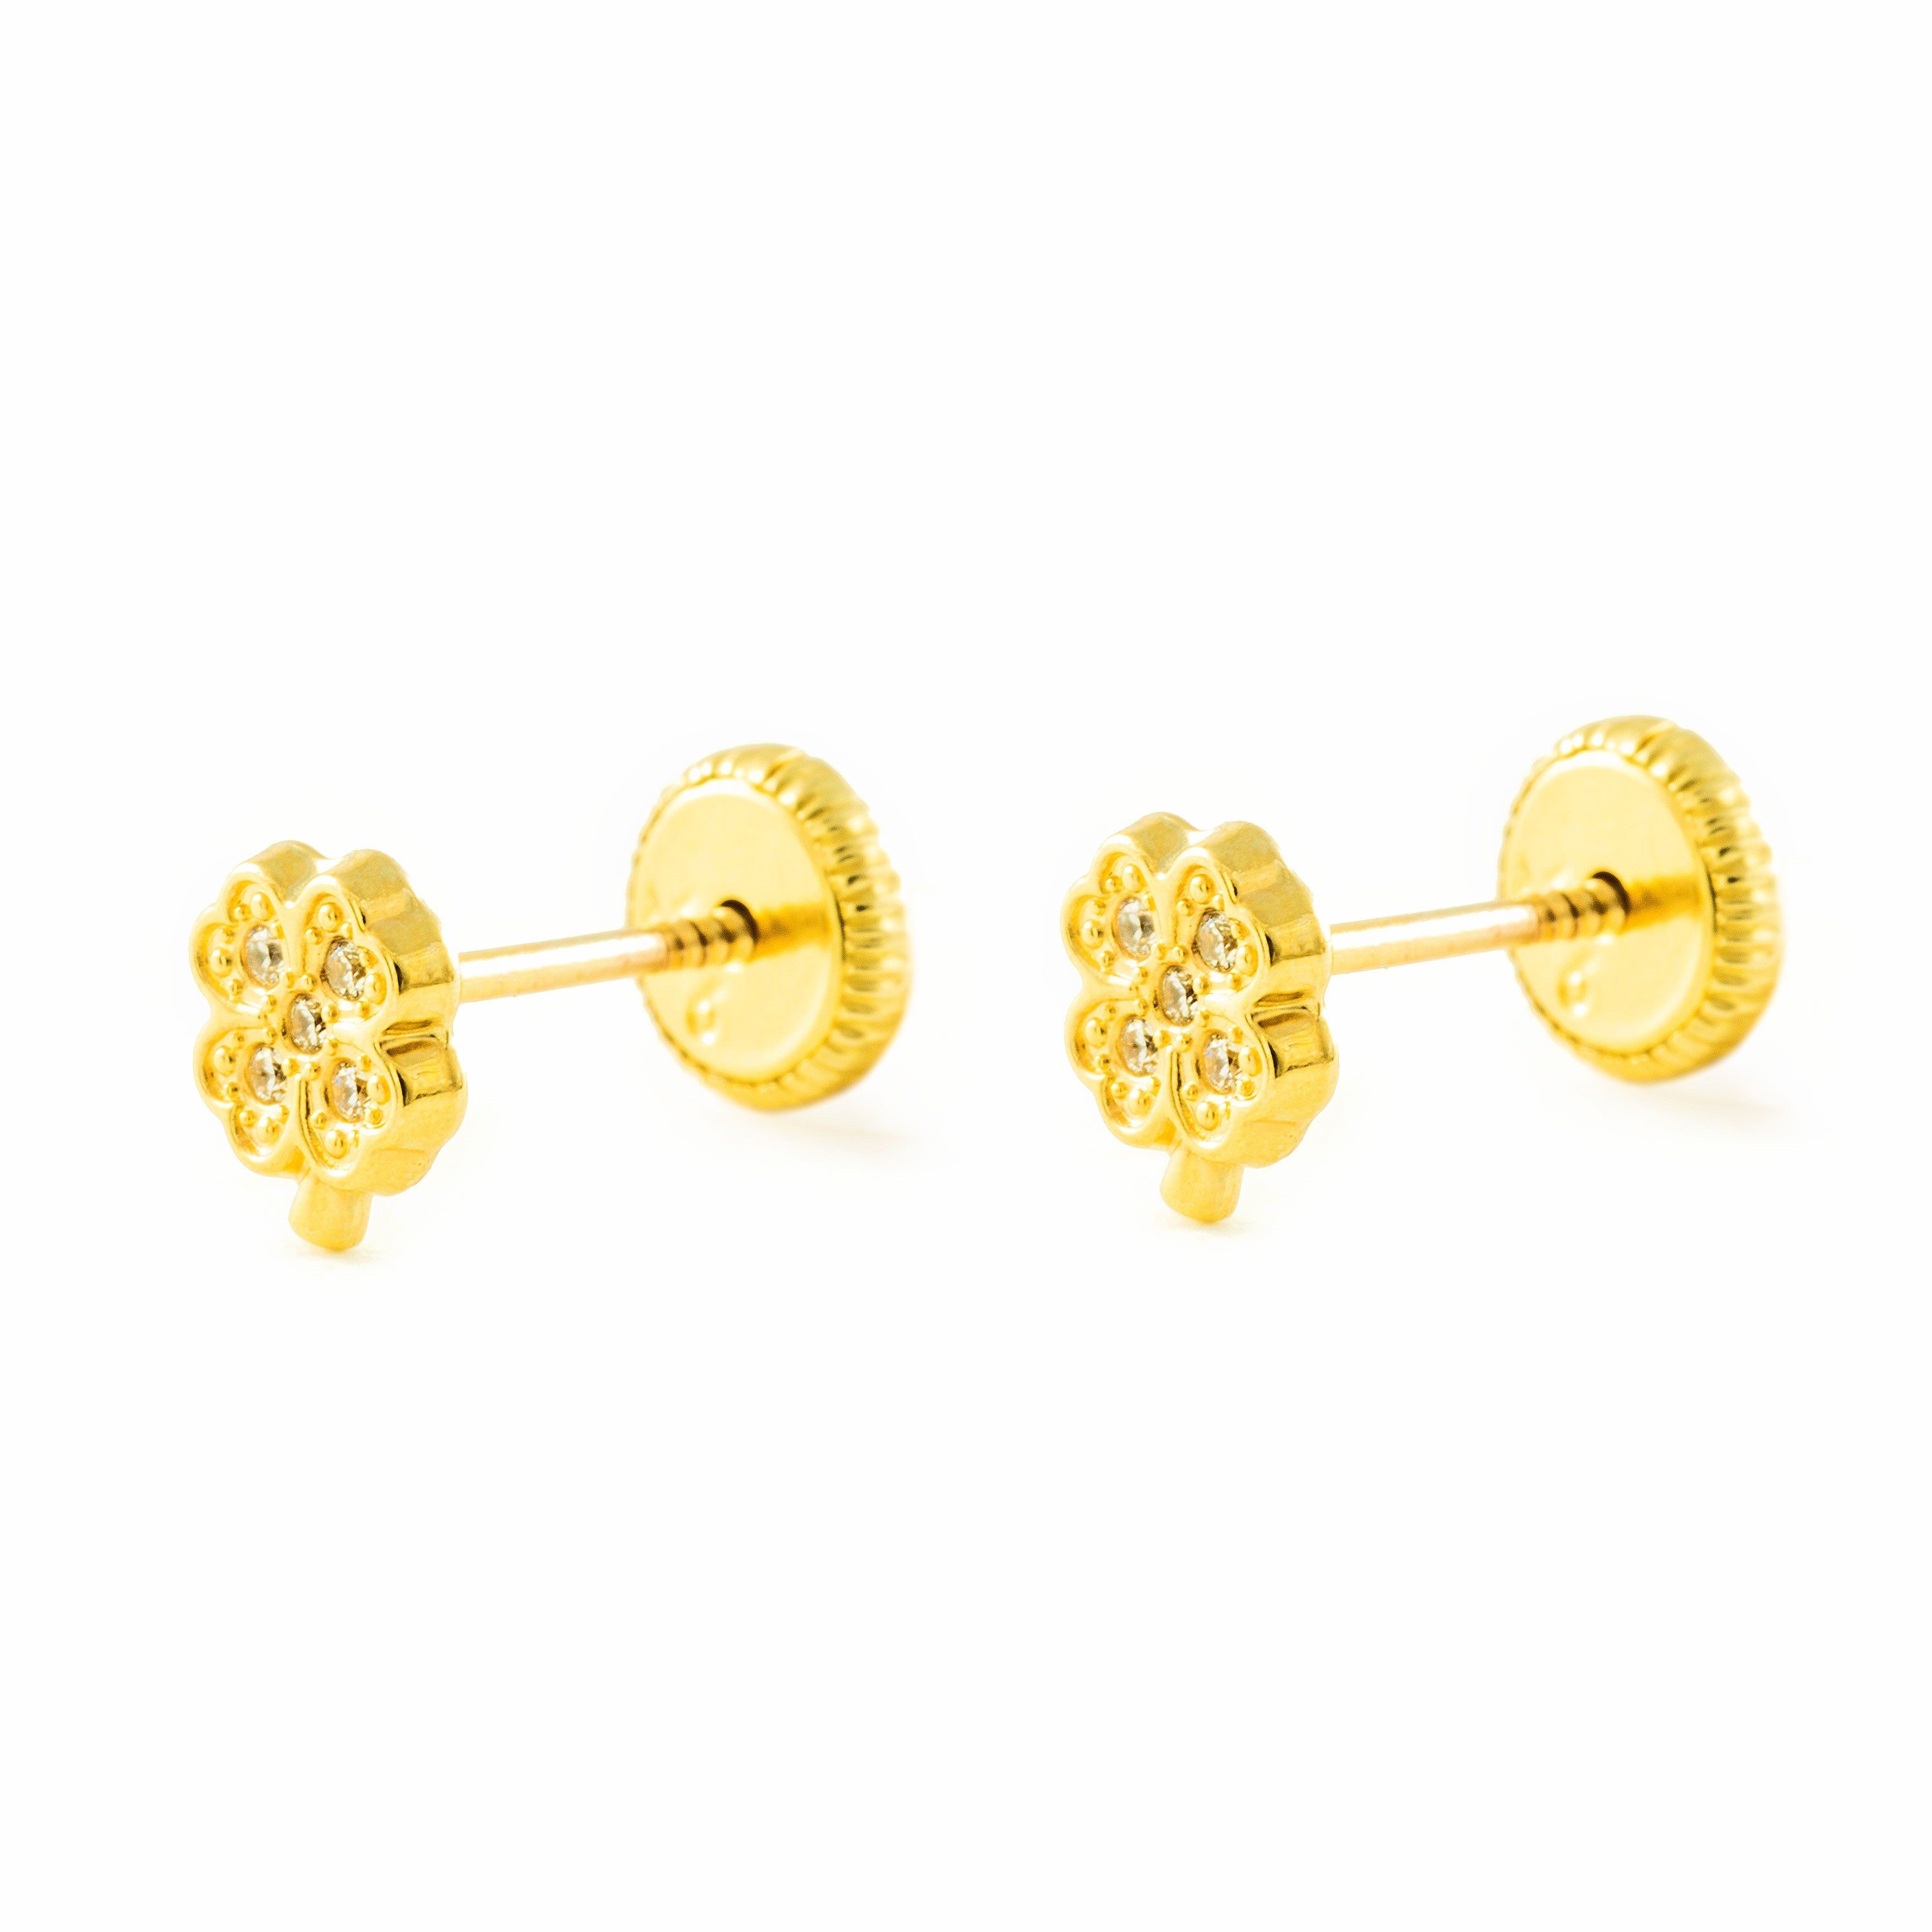 Pendientes Mujer-Niña Oro Amarillo 9K Cuatrebol Circonitas Brillo